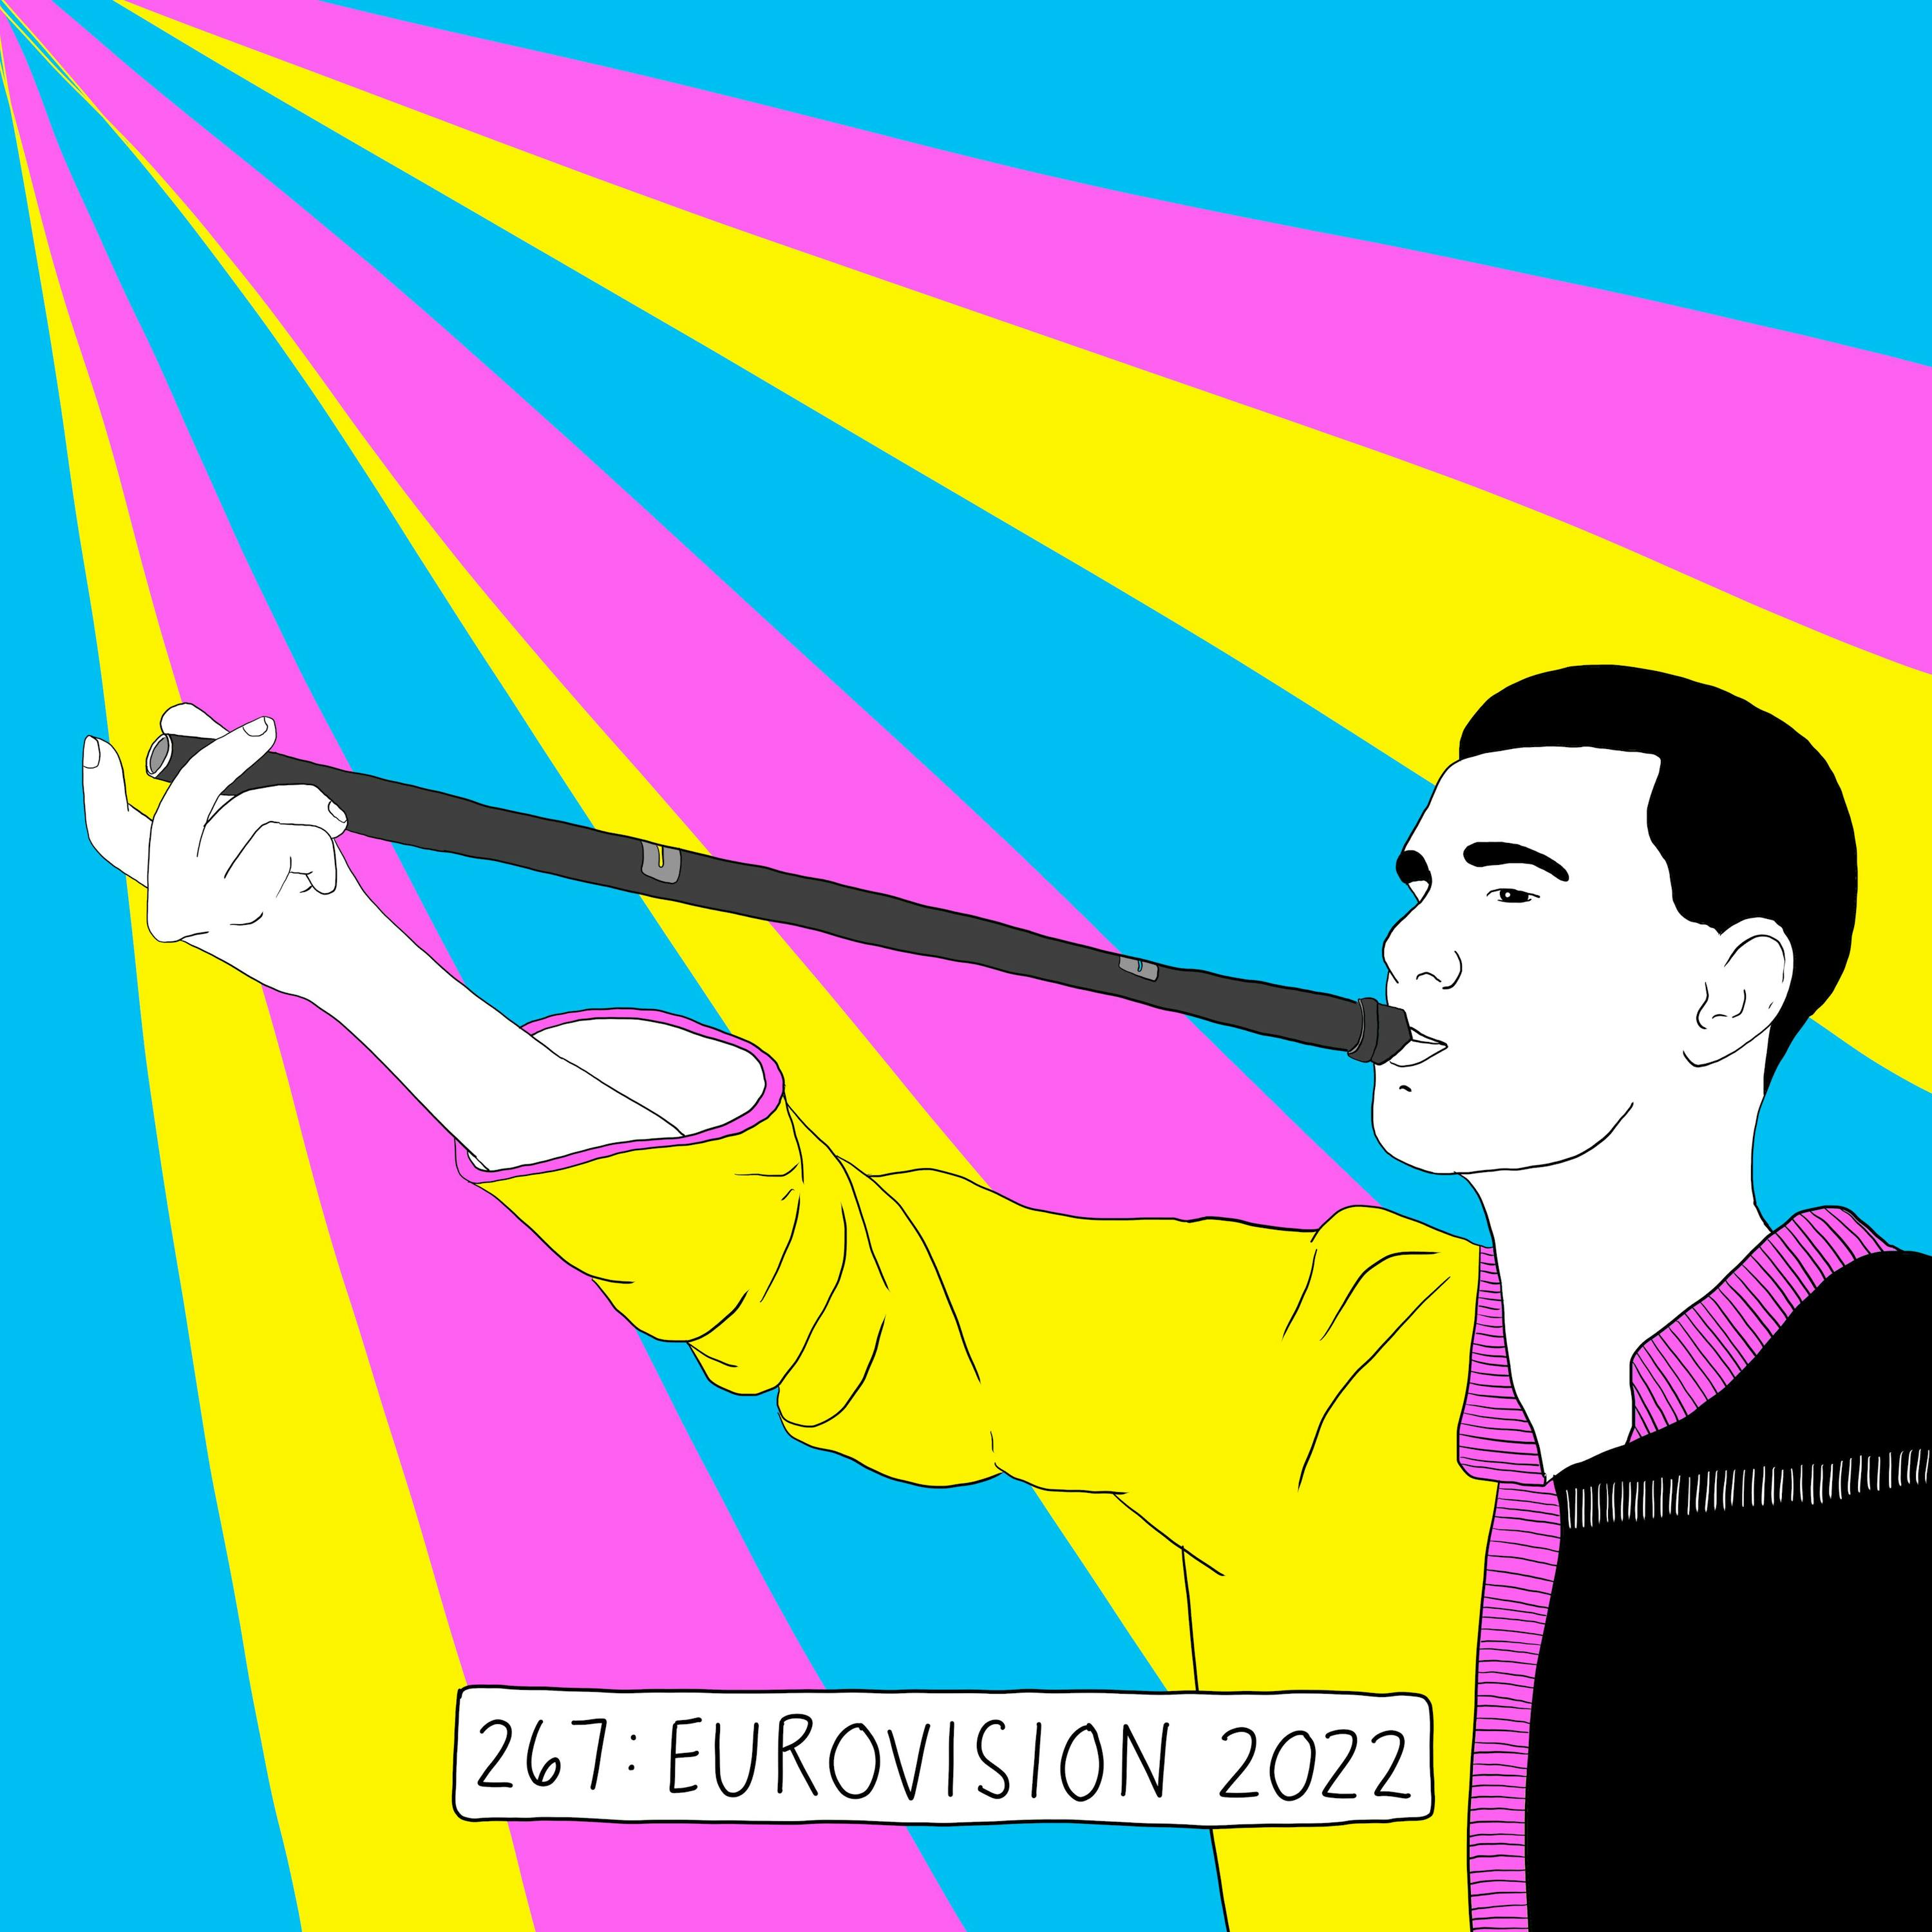 Ukraine Is a Frontrunner for Eurovision 2022